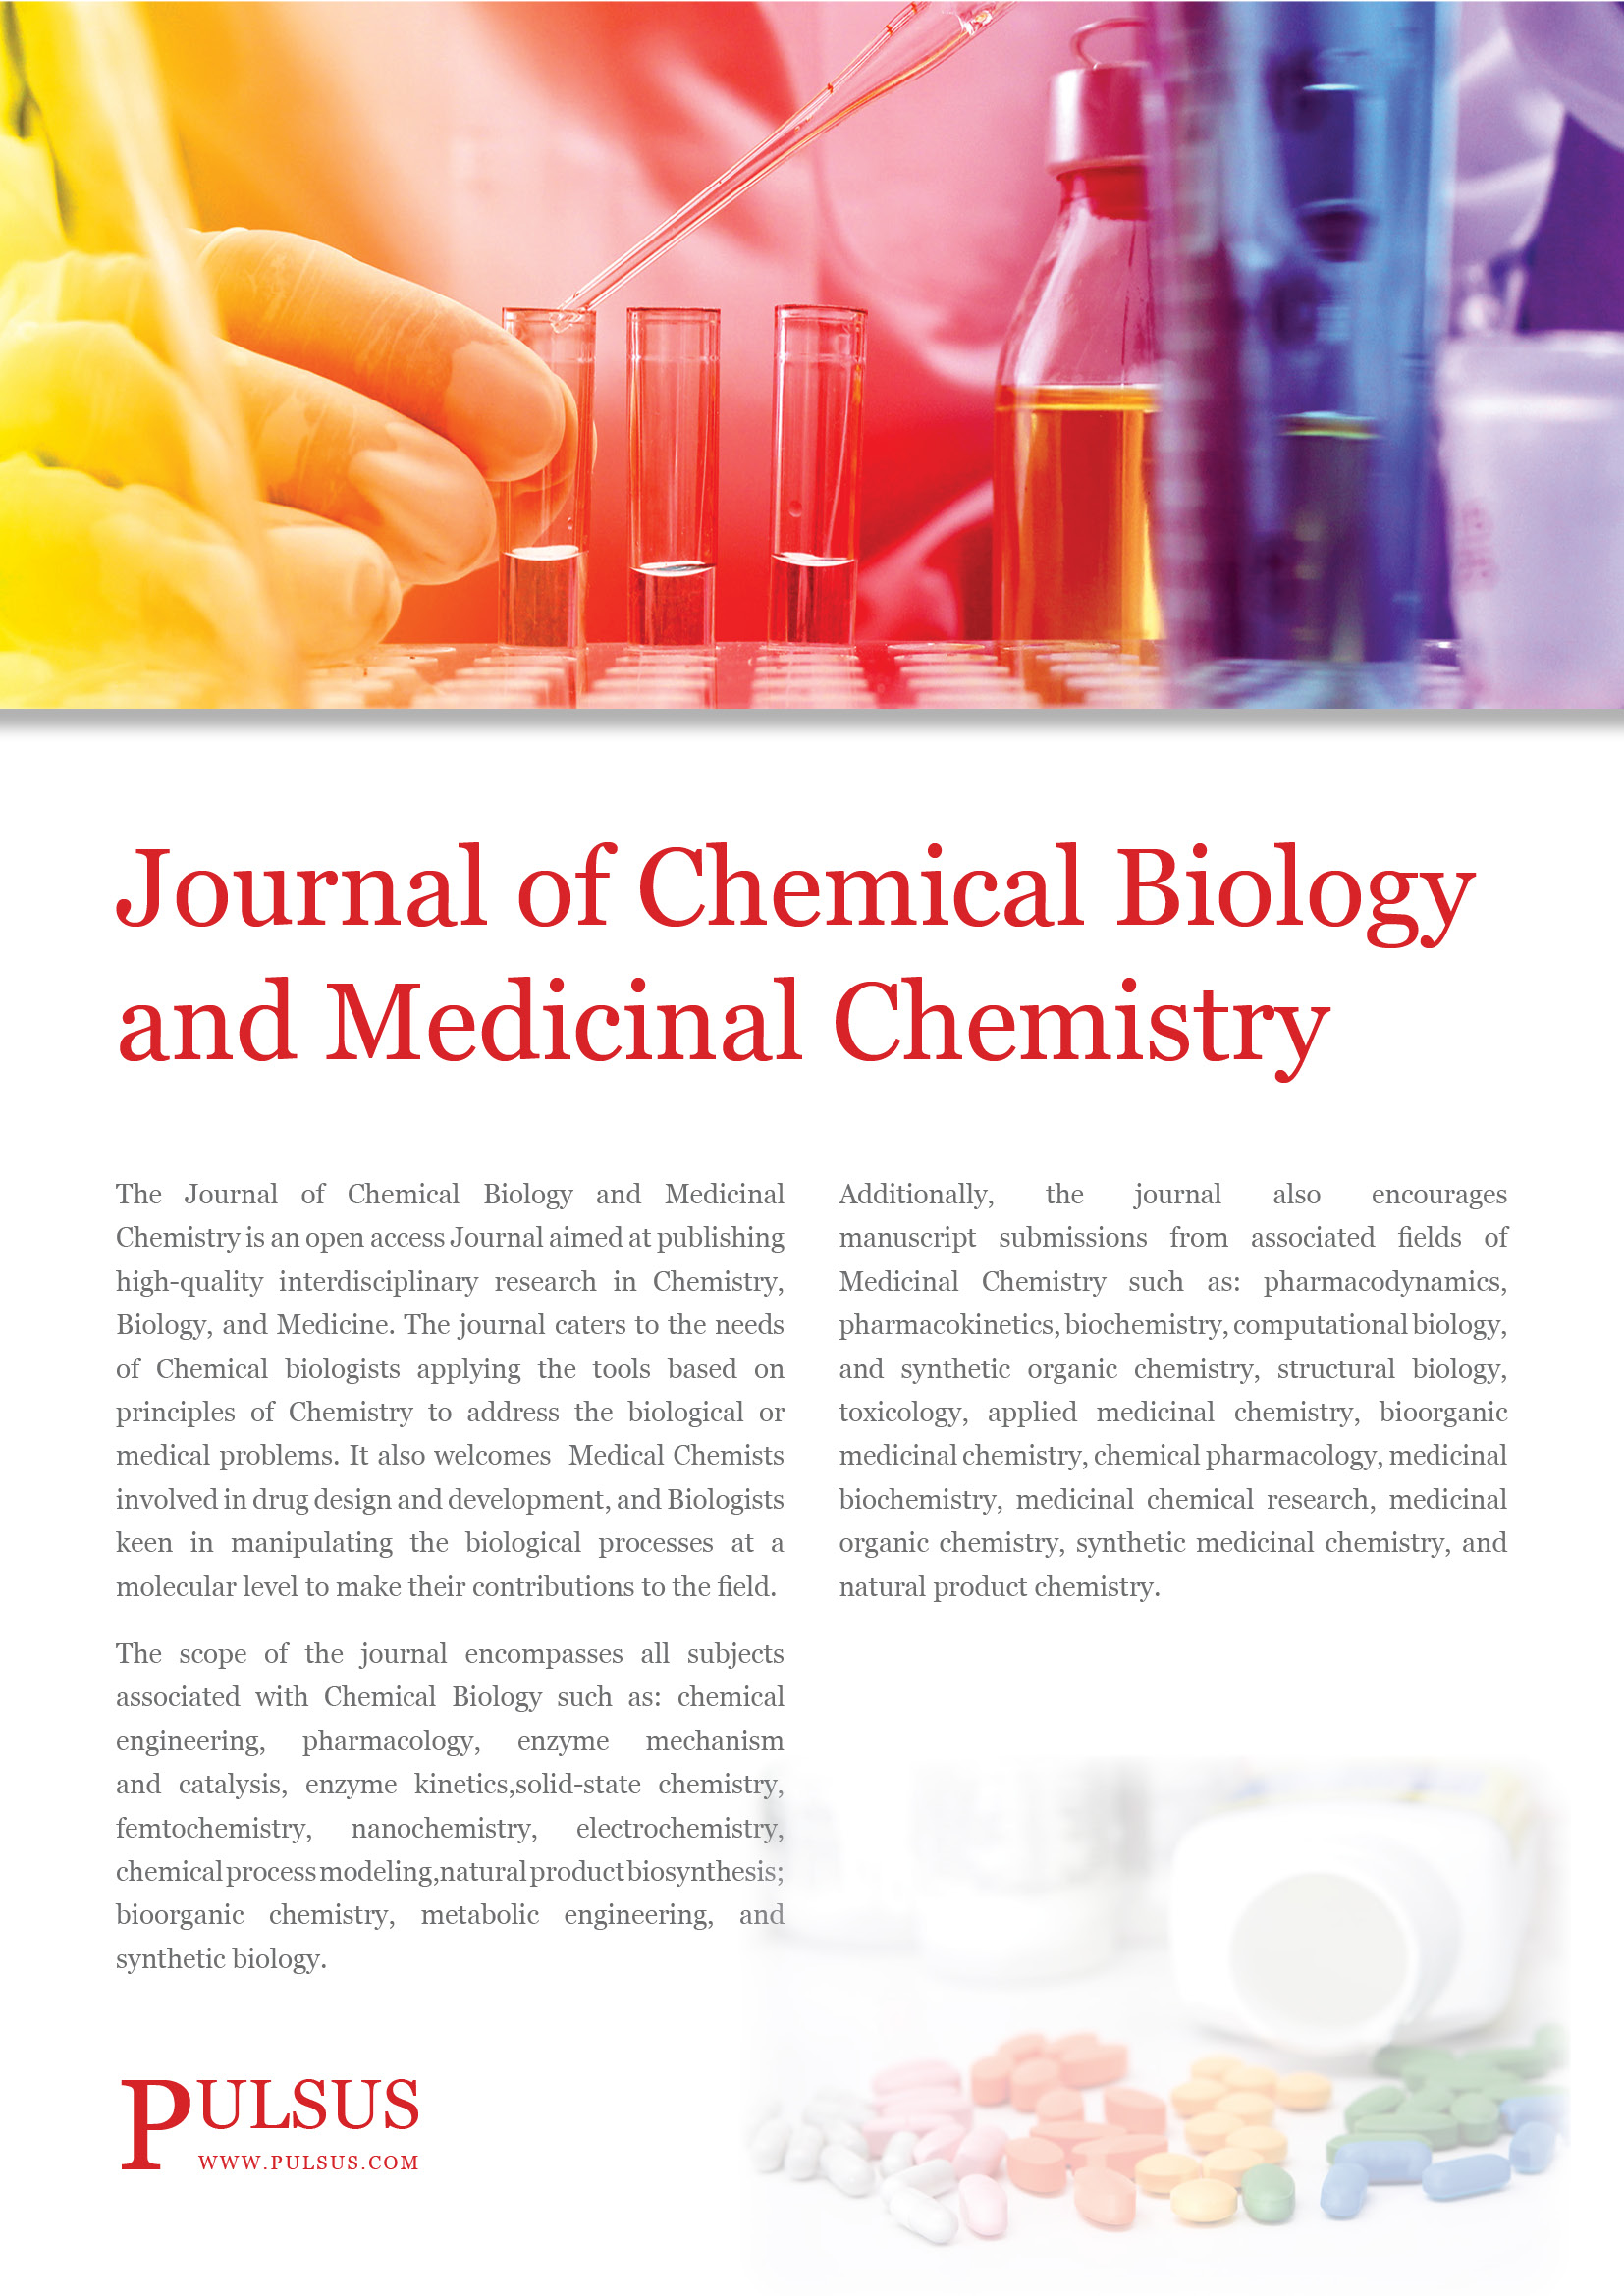 Revista de biología química y química medicinal